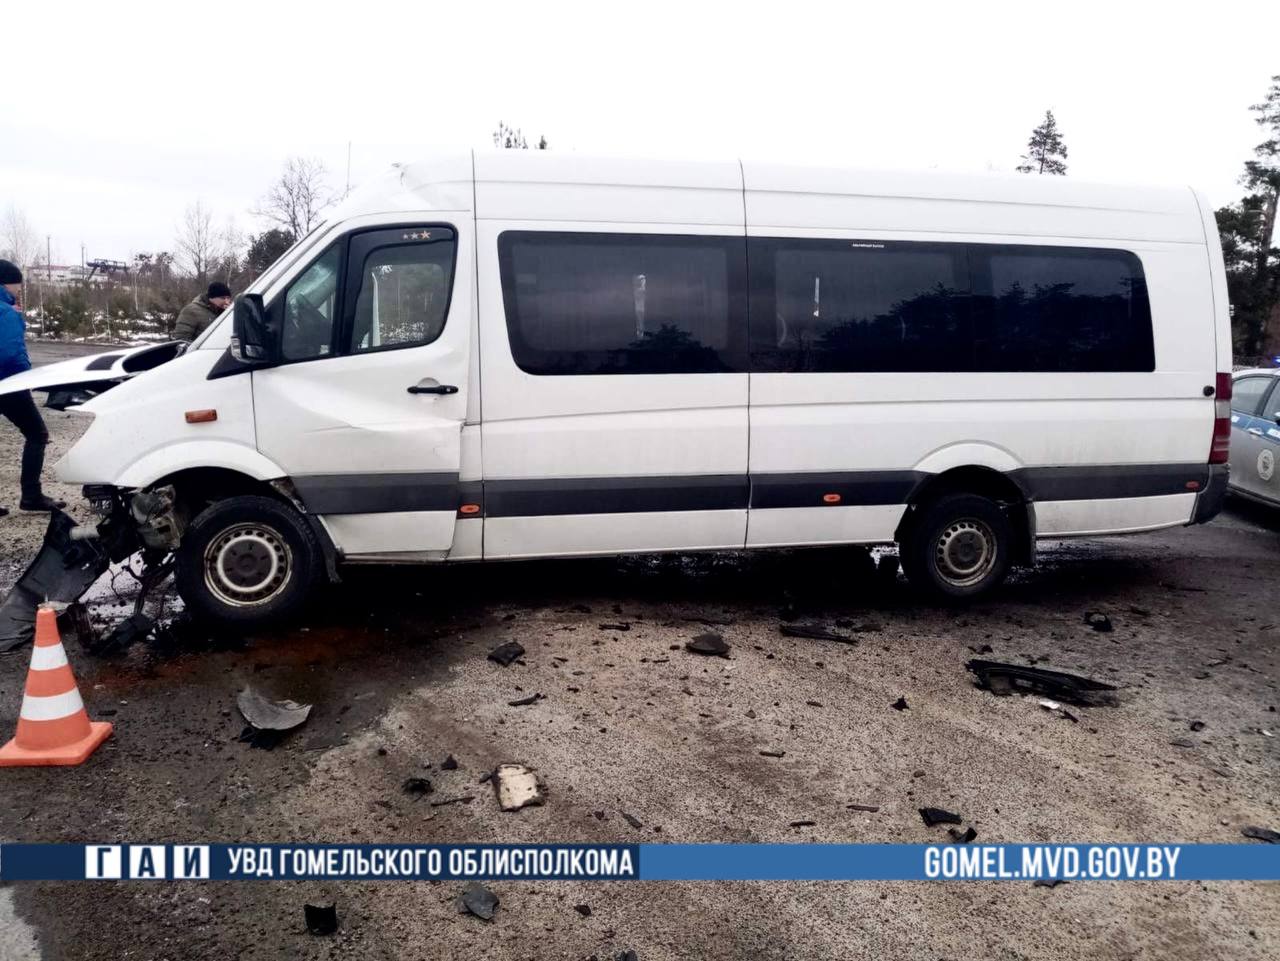 Один человек погиб в ДТП с микроавтобусом в Речицком районе